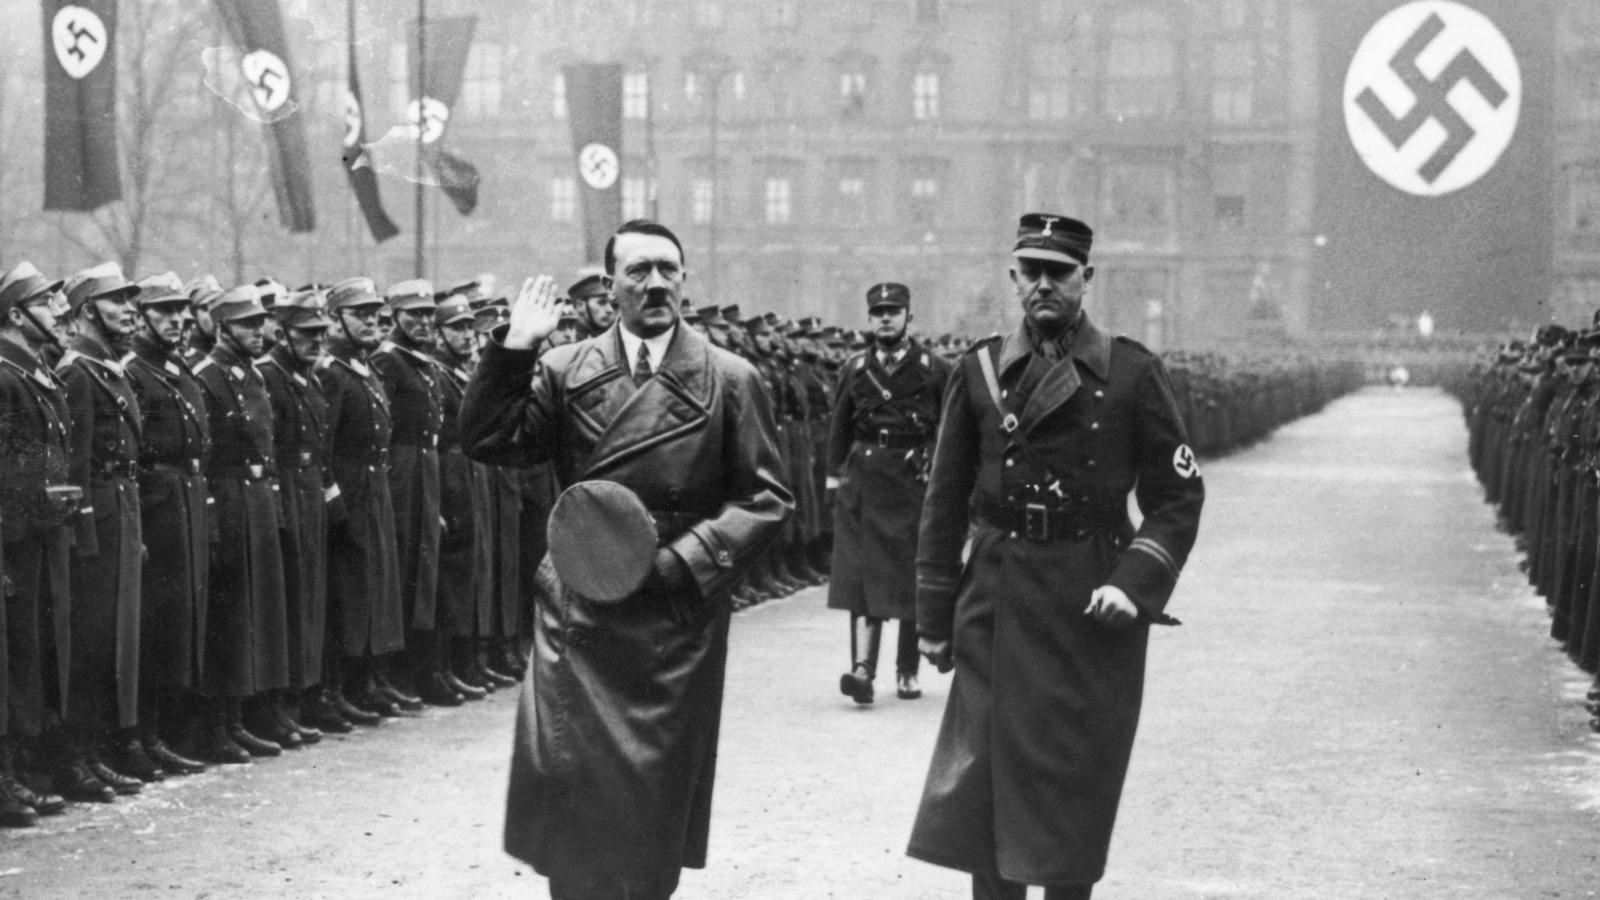 أجبر عدوان هتلر أغلبية في الطبقة الحاكمة البريطانية على التخلي عن تفضيل التعاون مع الرايخ الثالث، المعروف بسياسة 